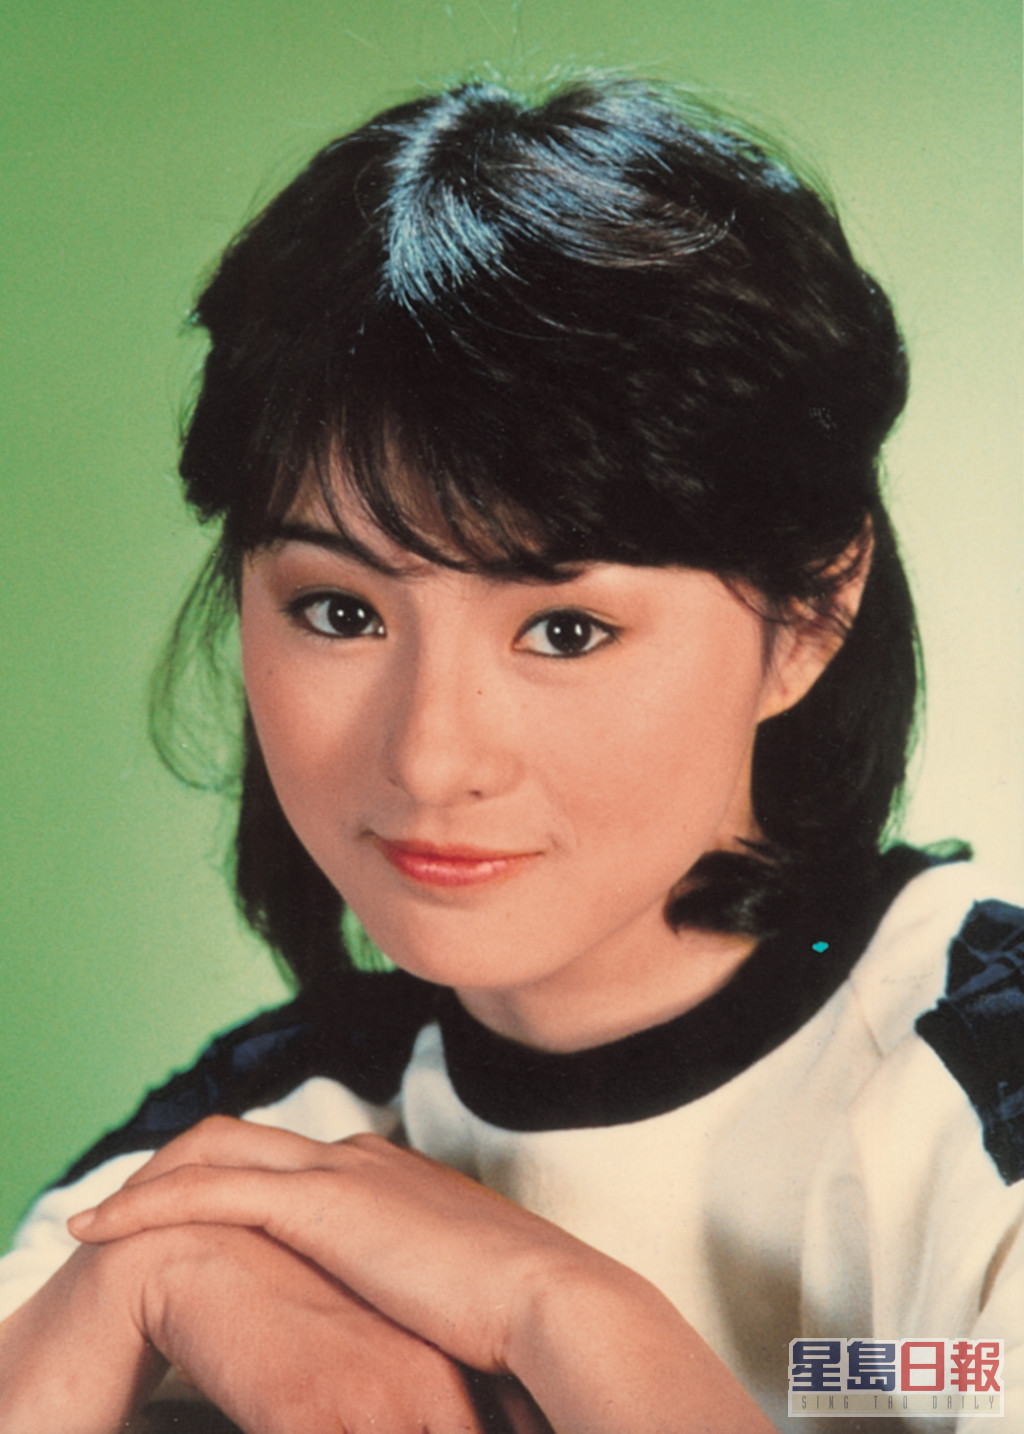 1984年，李賽鳳既拍電視又拍電影雙線發展，而外表純真可愛的她，多演出主角小妹妹的角色。